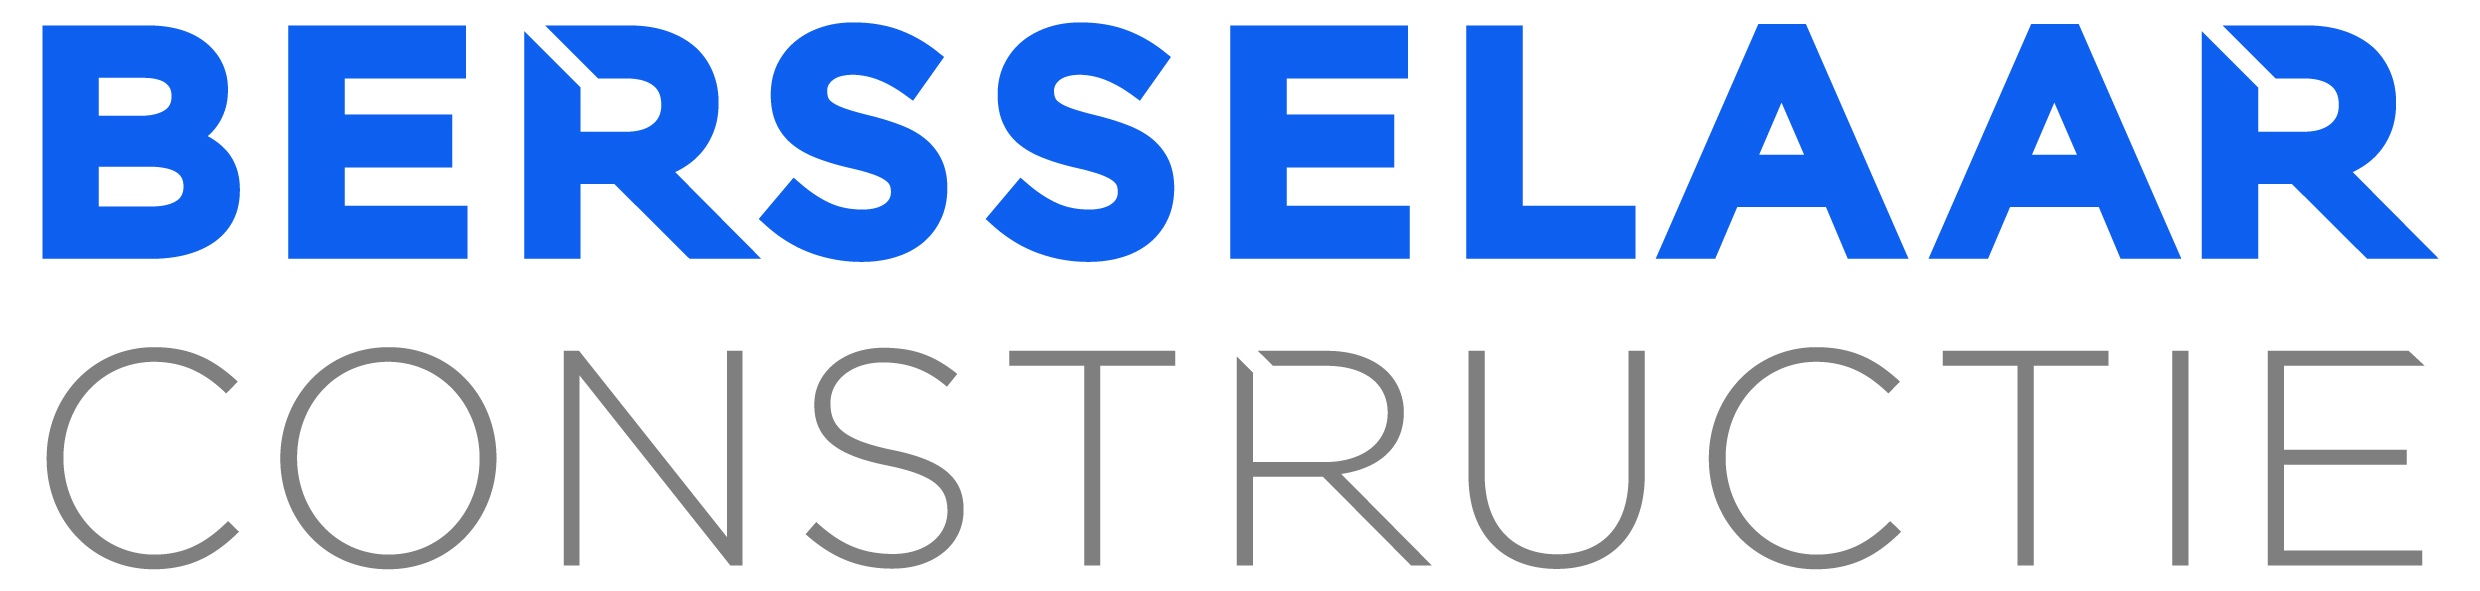 van den Bersselaar constructie logo